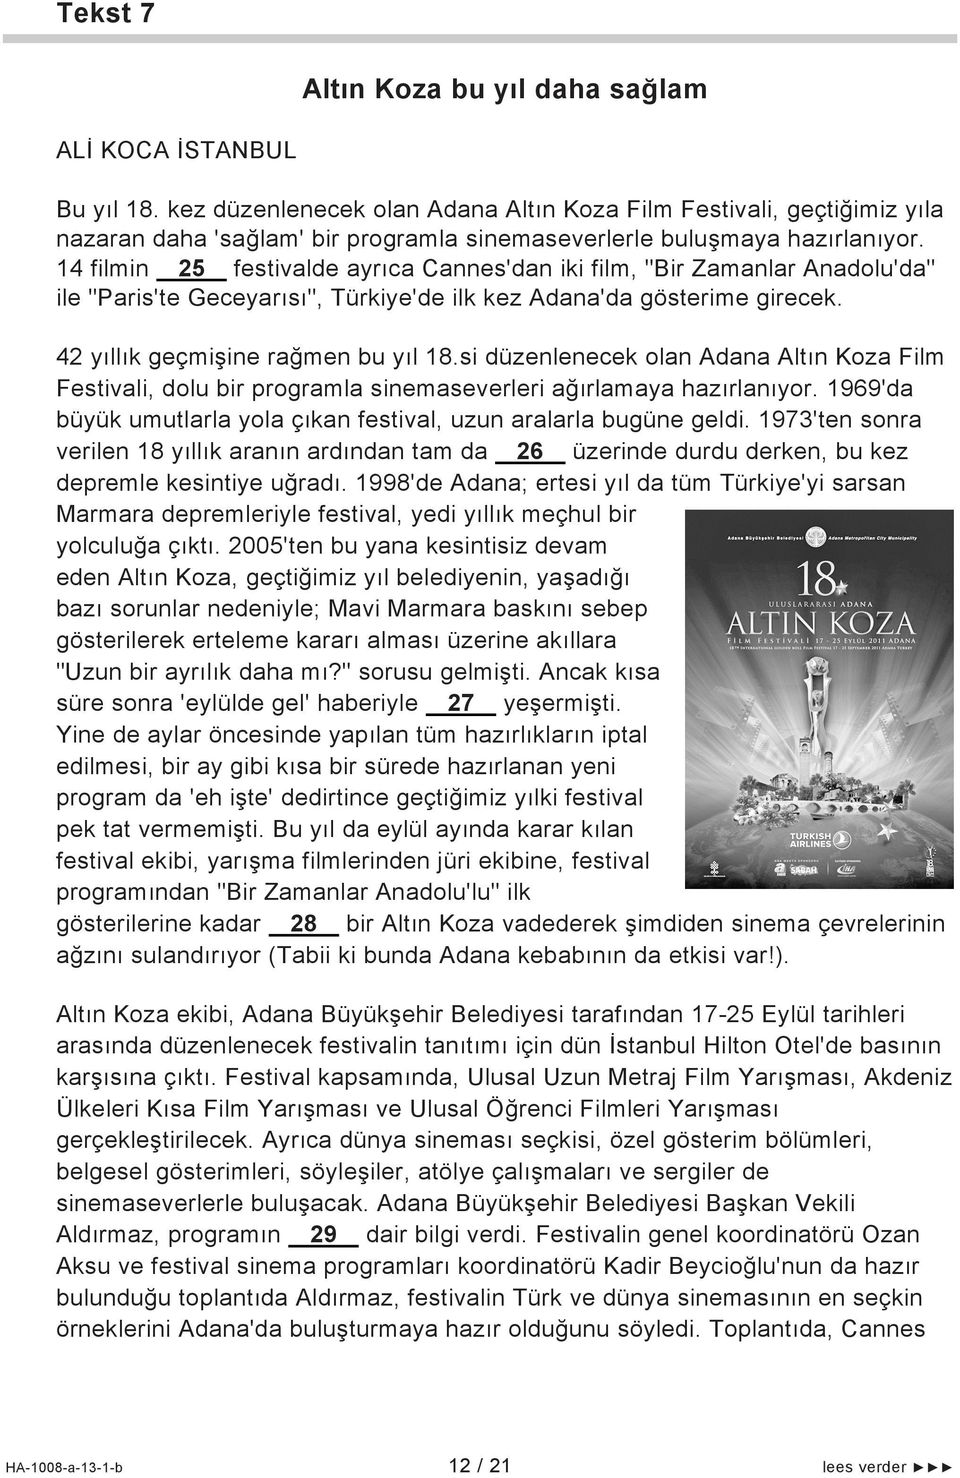 14 filmin 25 festivalde ayrıca Cannes'dan iki film, "Bir Zamanlar Anadolu'da" ile "Paris'te Geceyarısı", Türkiye'de ilk kez Adana'da gösterime girecek. 42 yıllık geçmişine rağmen bu yıl 18.